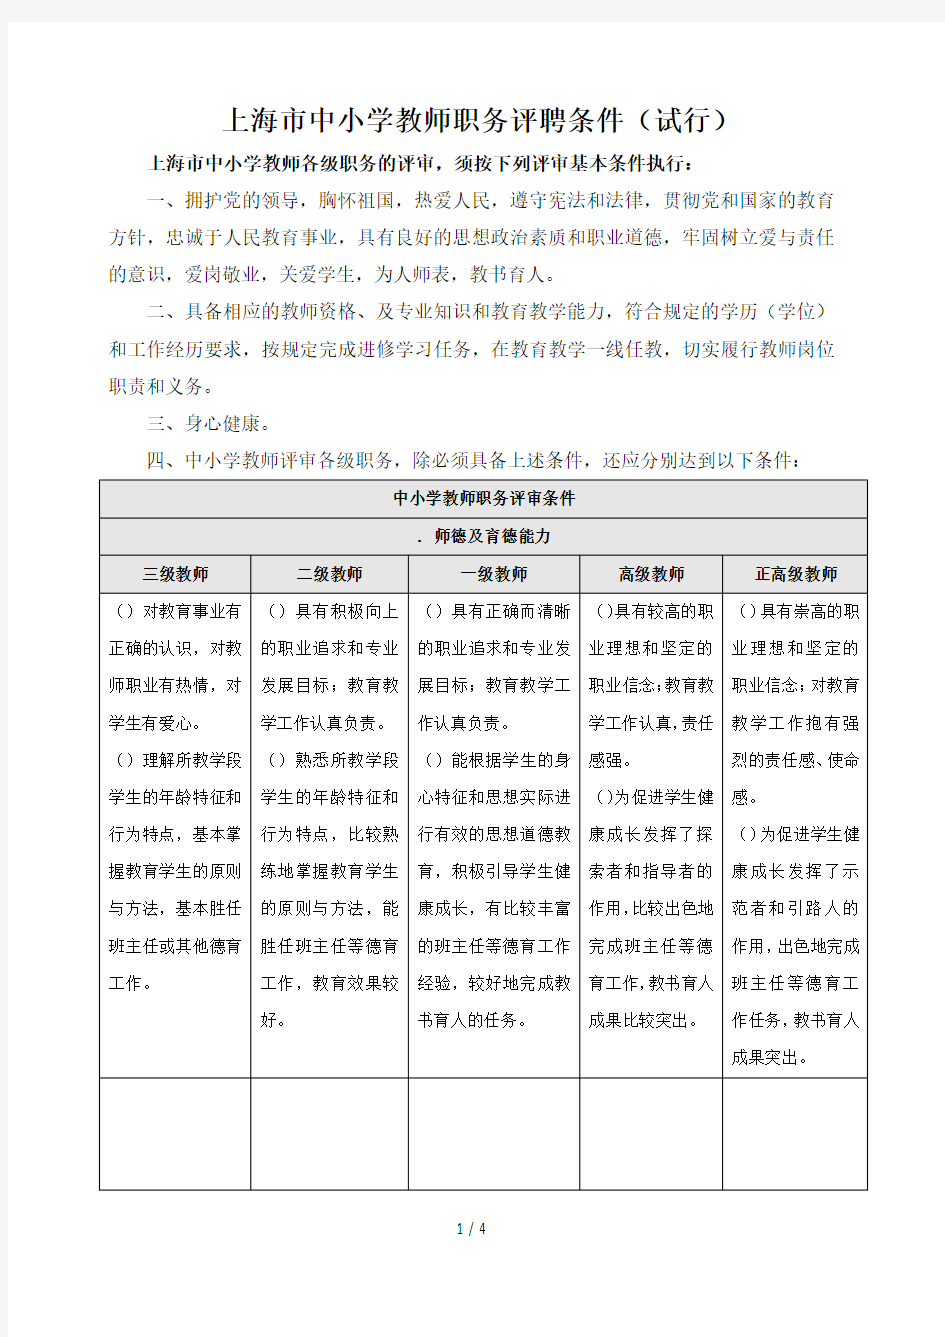 上海市中小学教师职务评聘条件